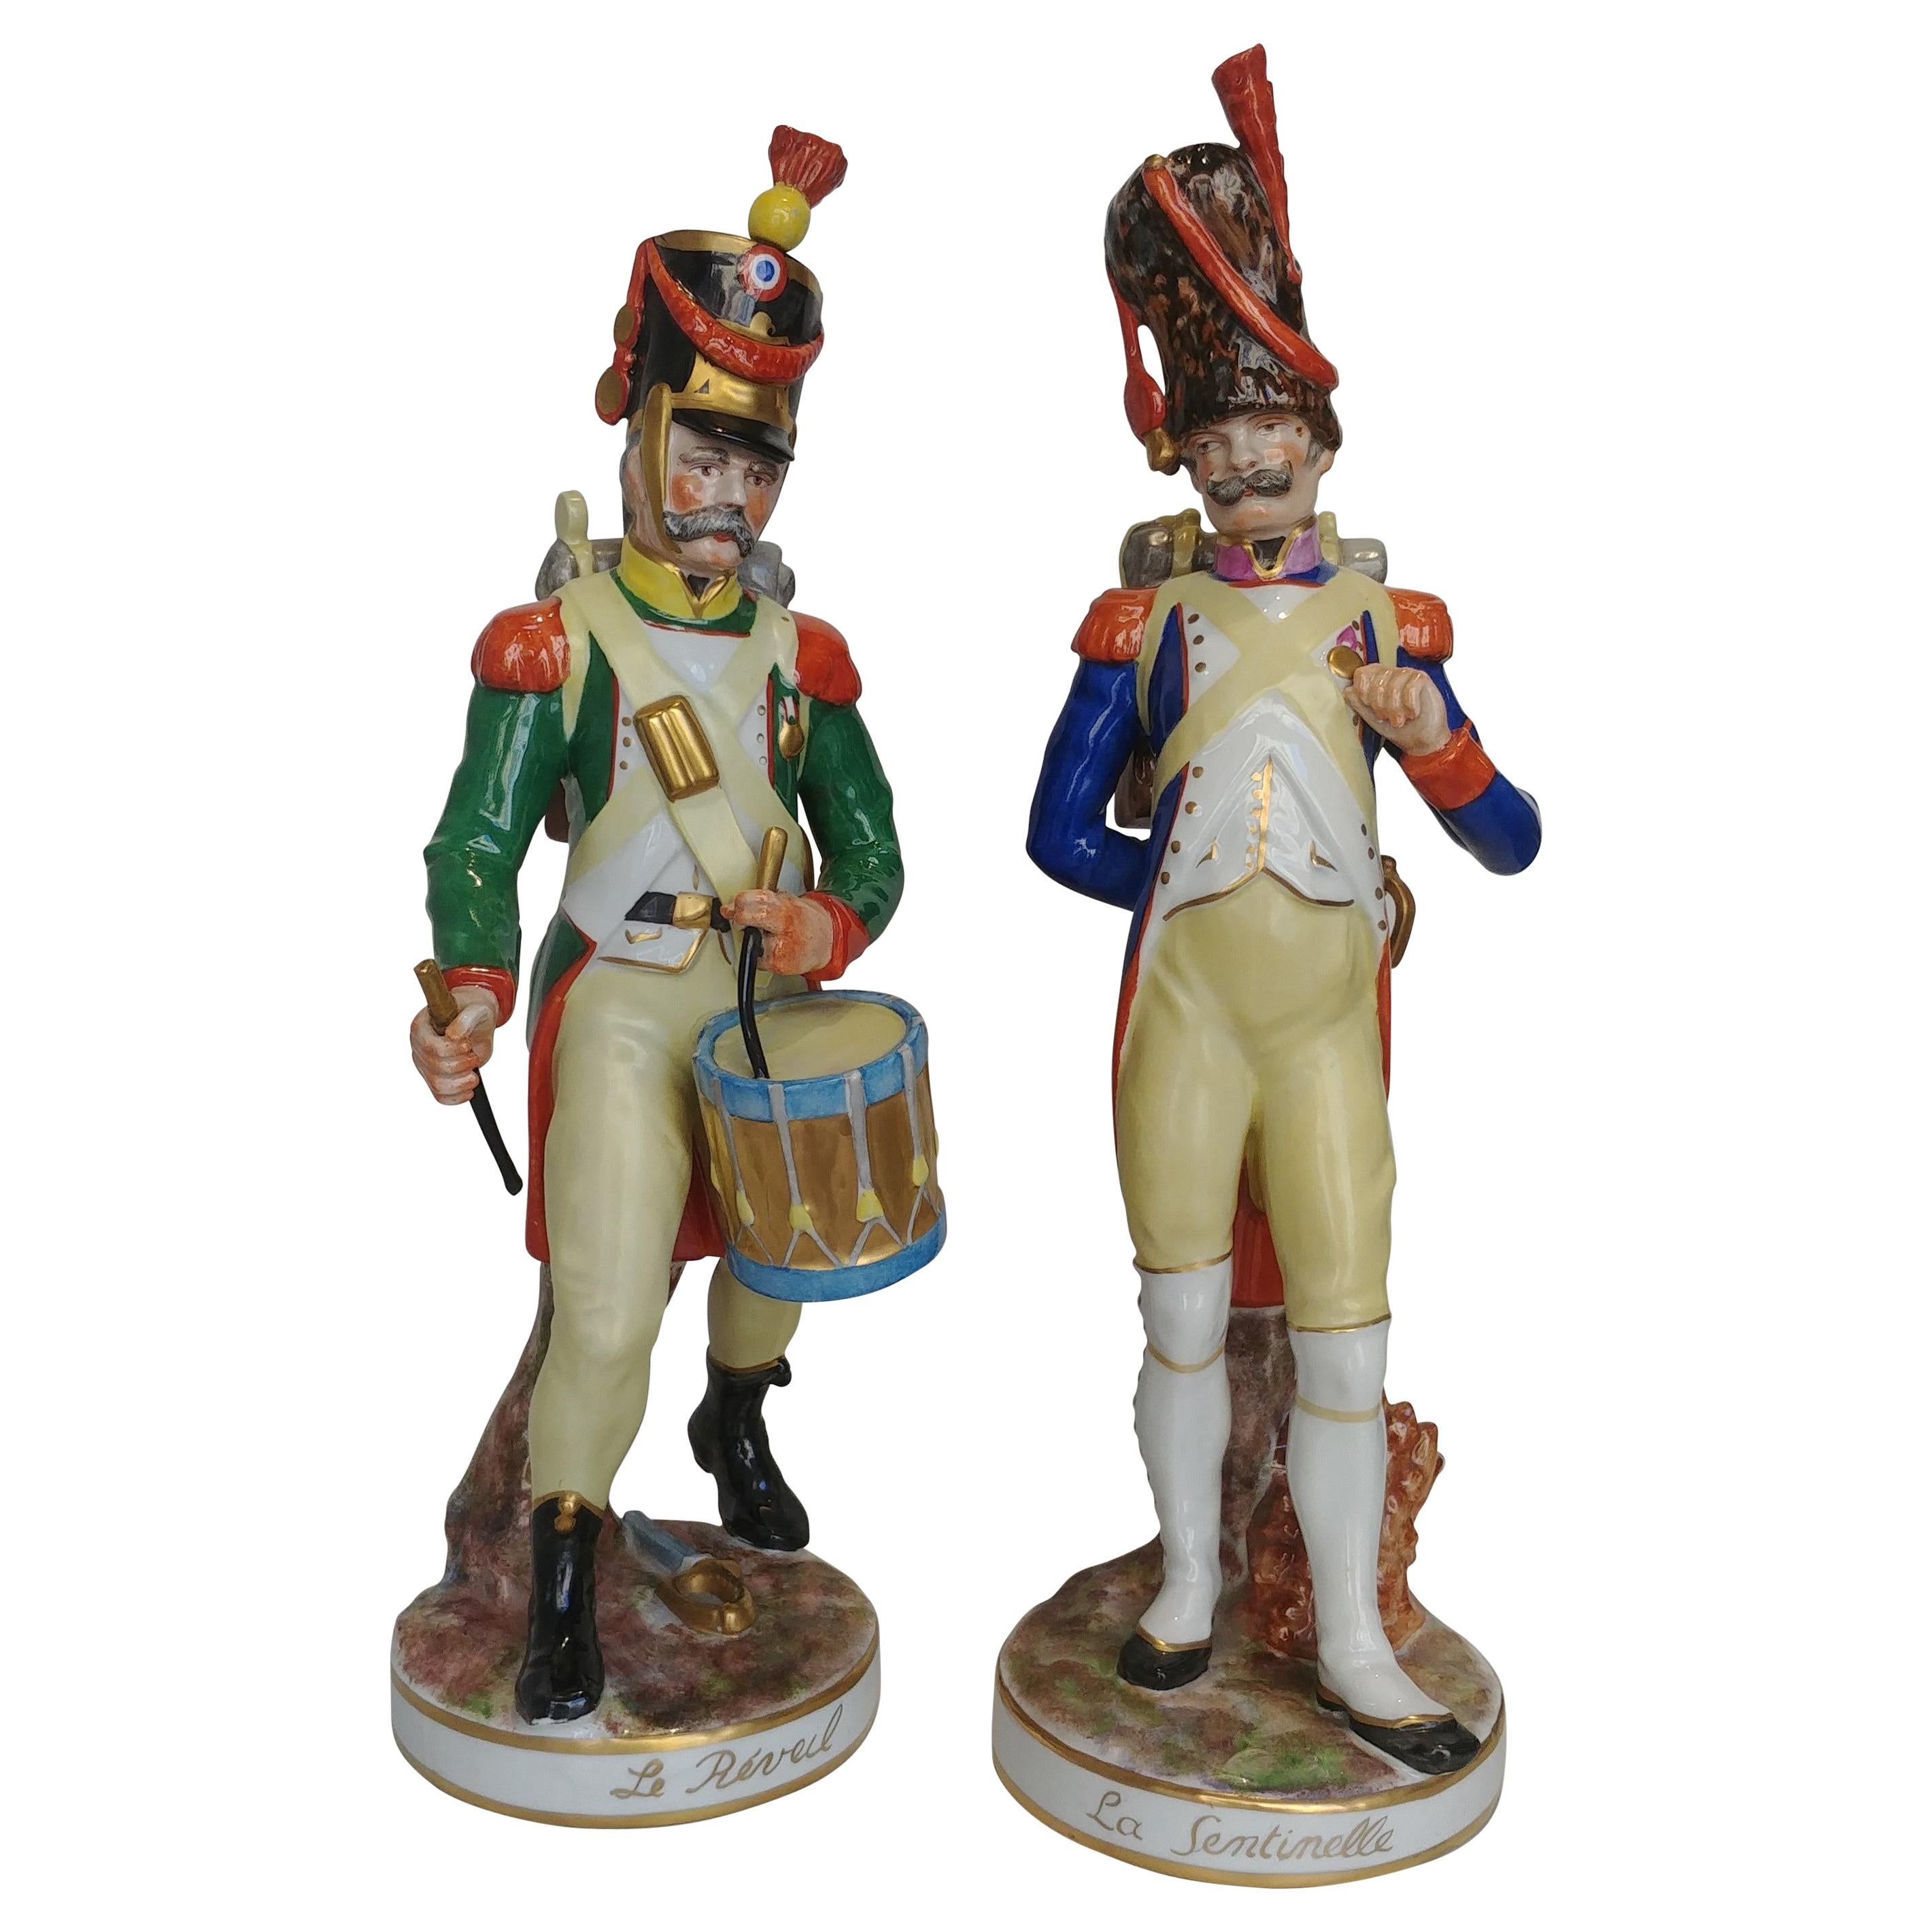 Soldiers Porcelain Figures Branded Porcelaine de Paris, 18th Century Style For Sale